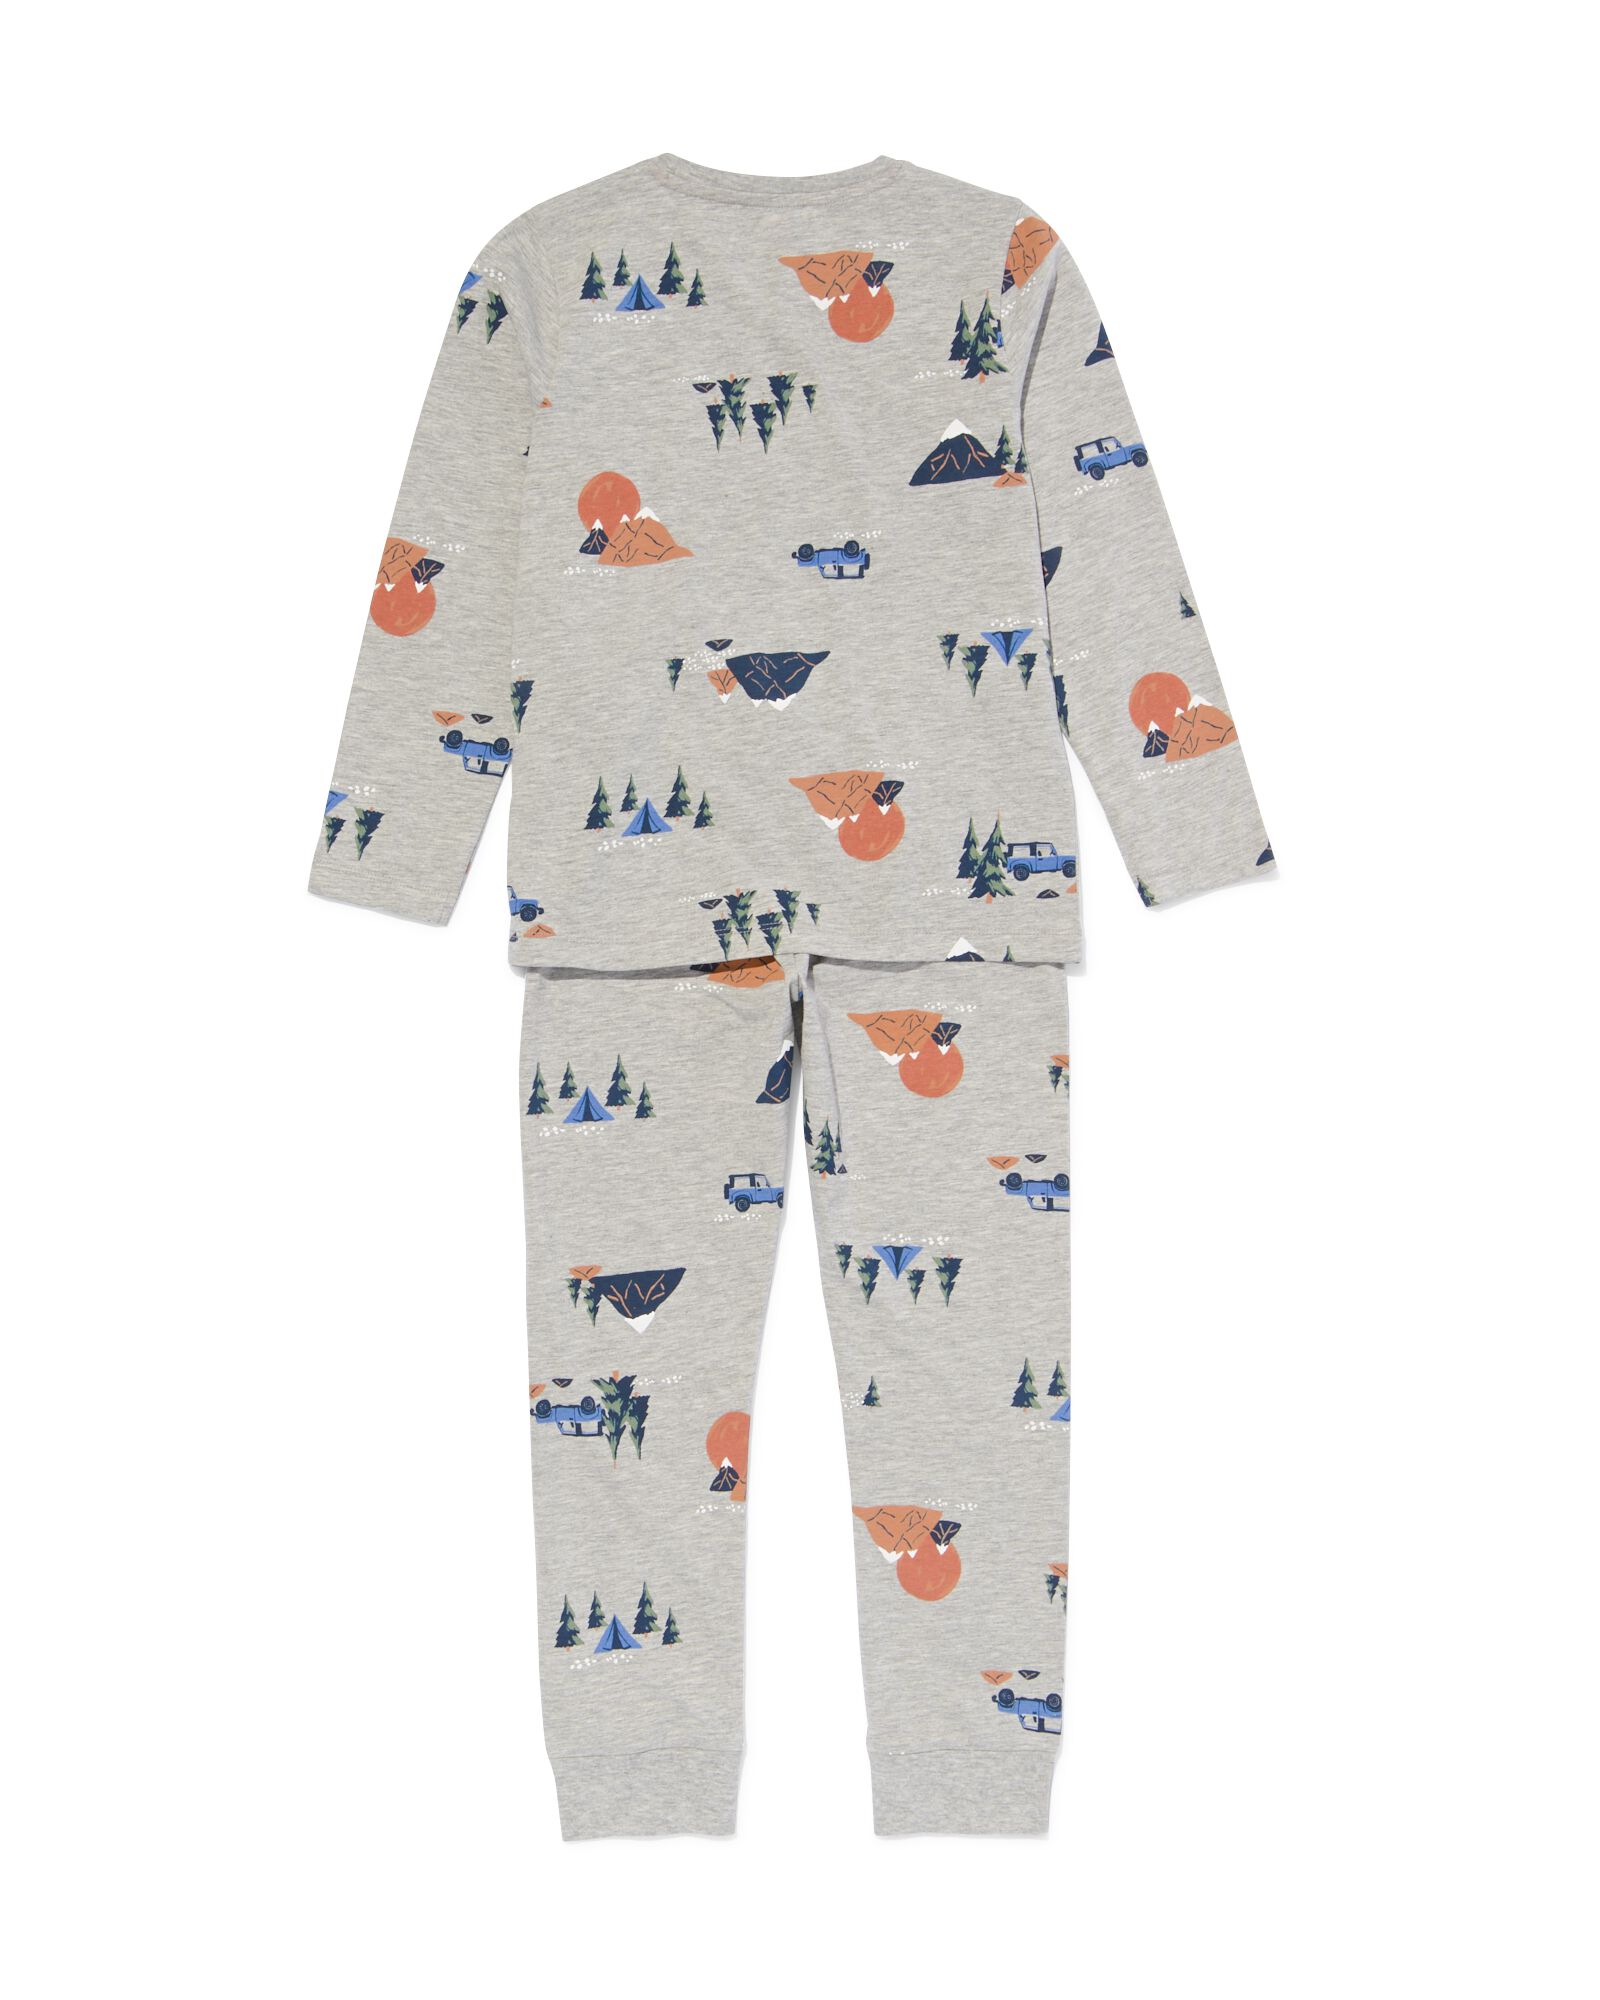 Kinder-Pyjama, Abenteuer graumeliert graumeliert - 23020680GREYMELANGE - HEMA